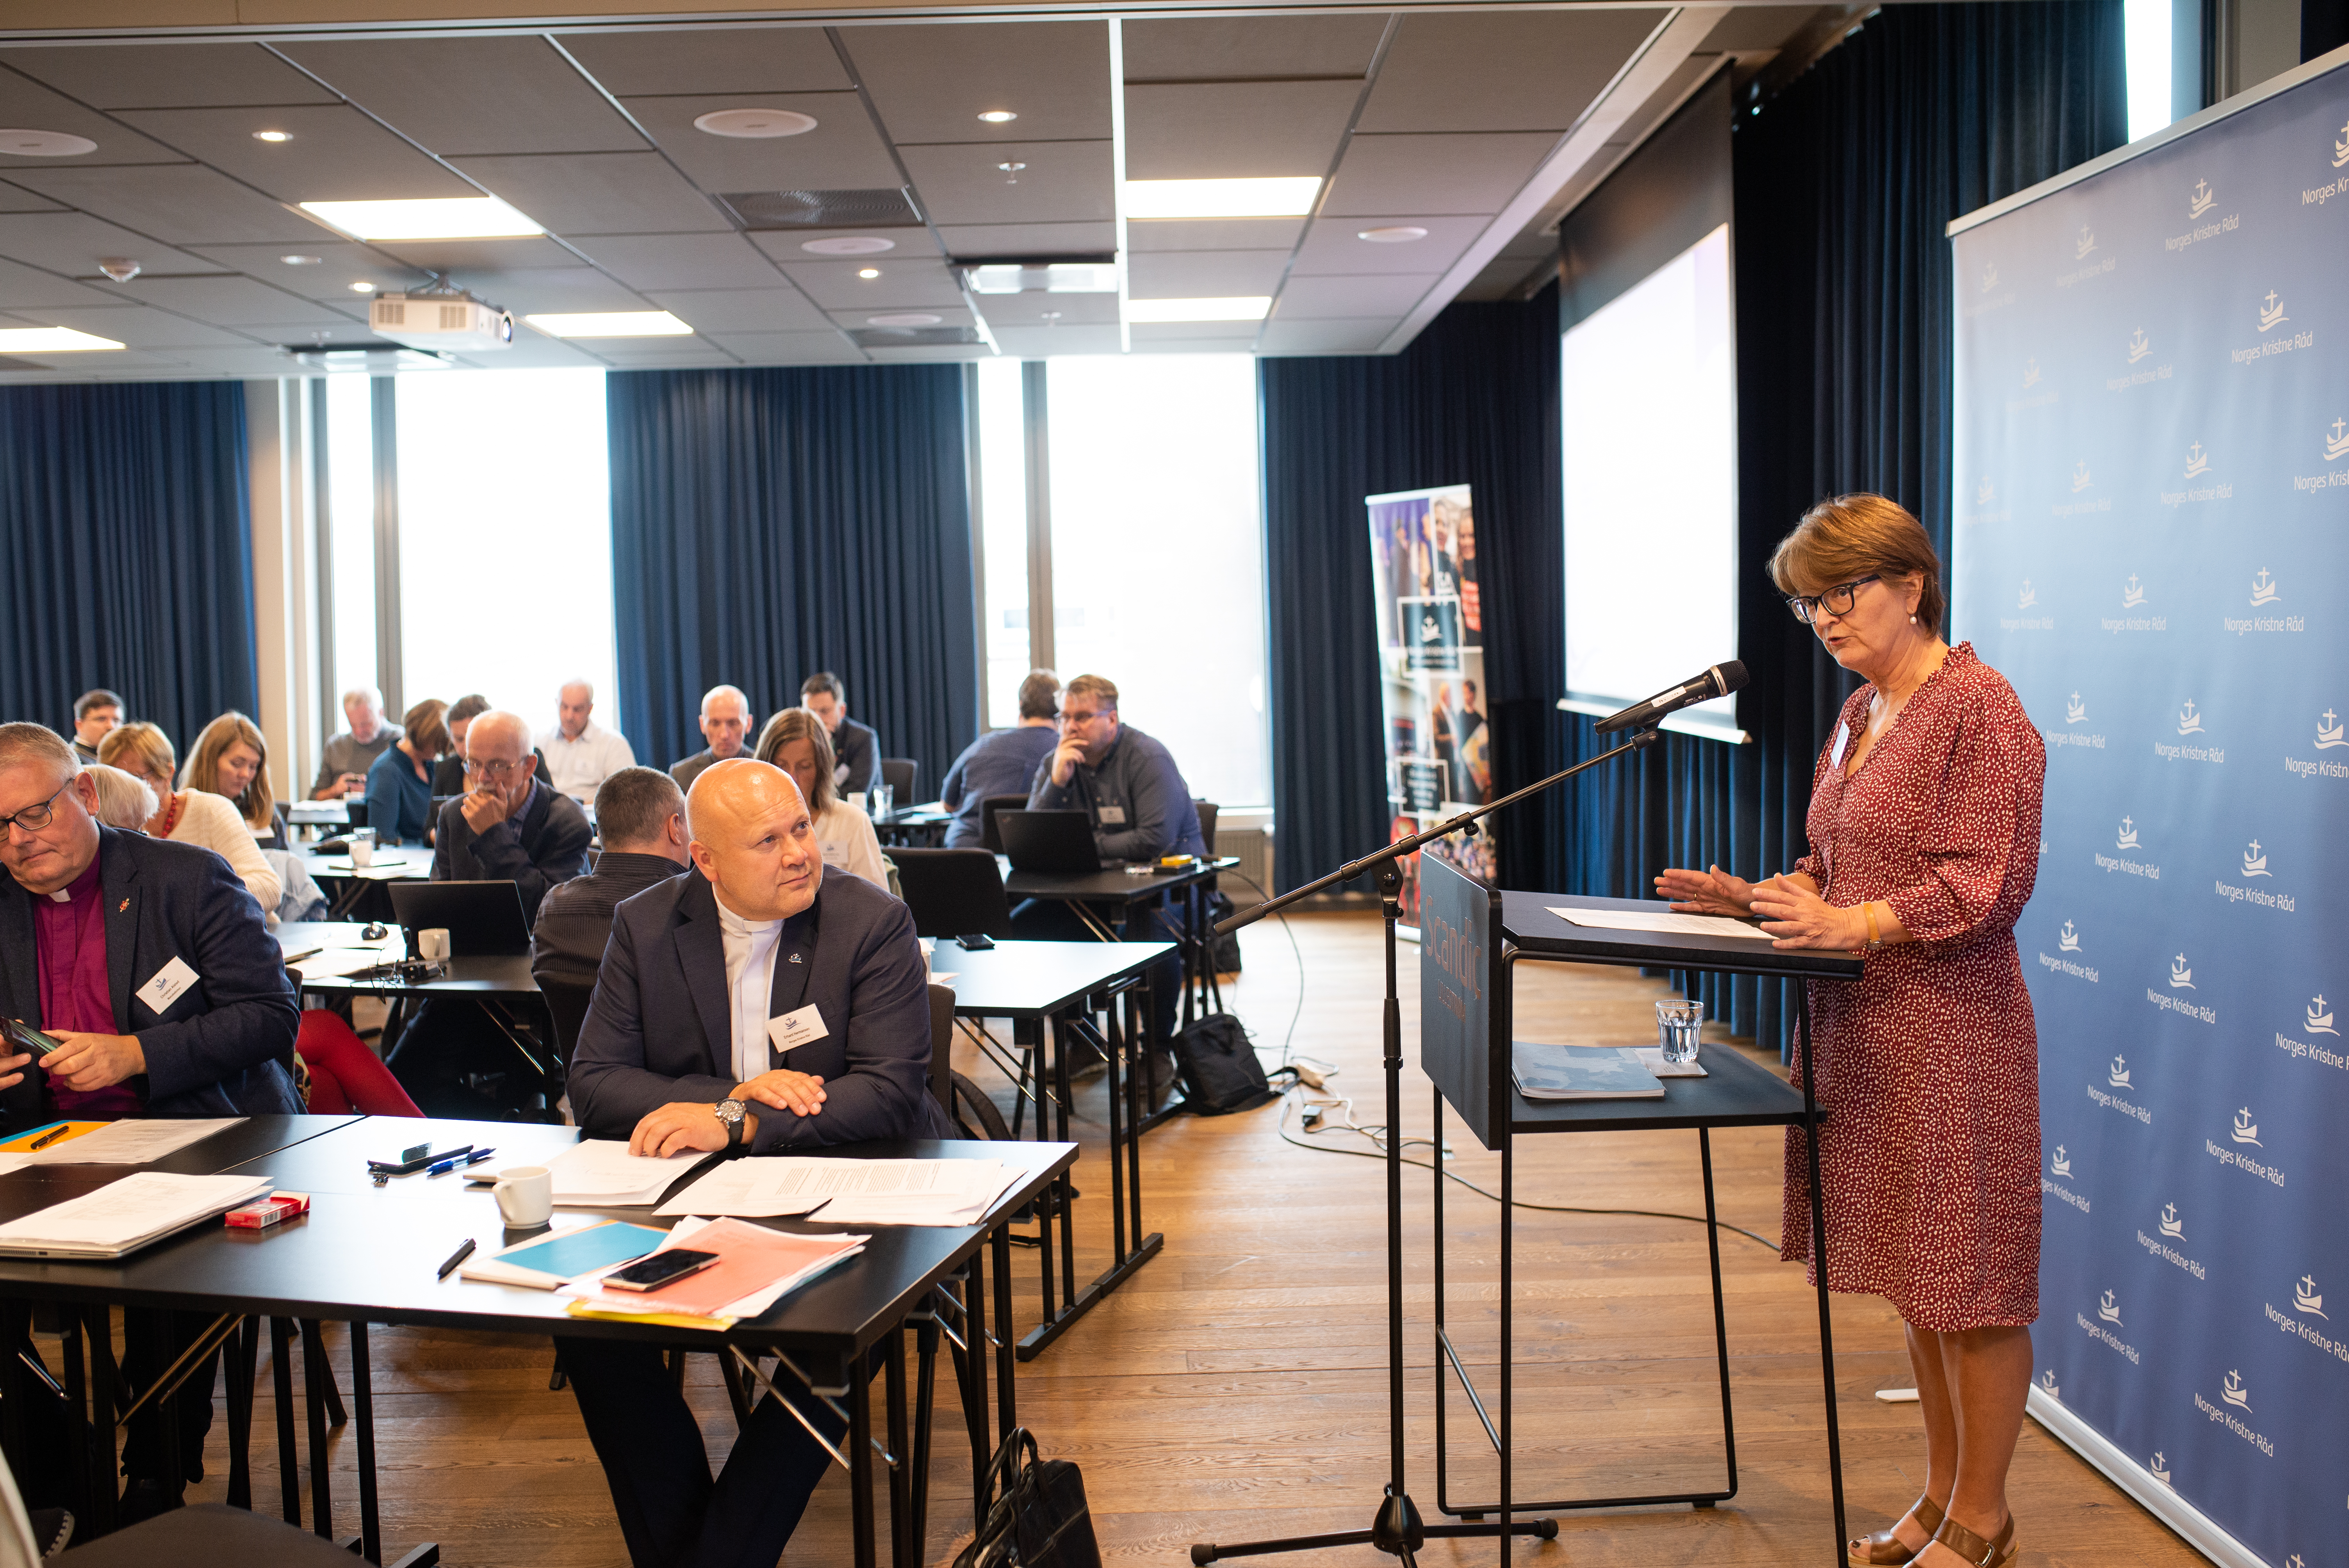 STYRELEDER: Berit Hagen Agøy er styreleder i Norges Kristne Råd. Under onsdagens rådsmøte holdt hun tale som leder.